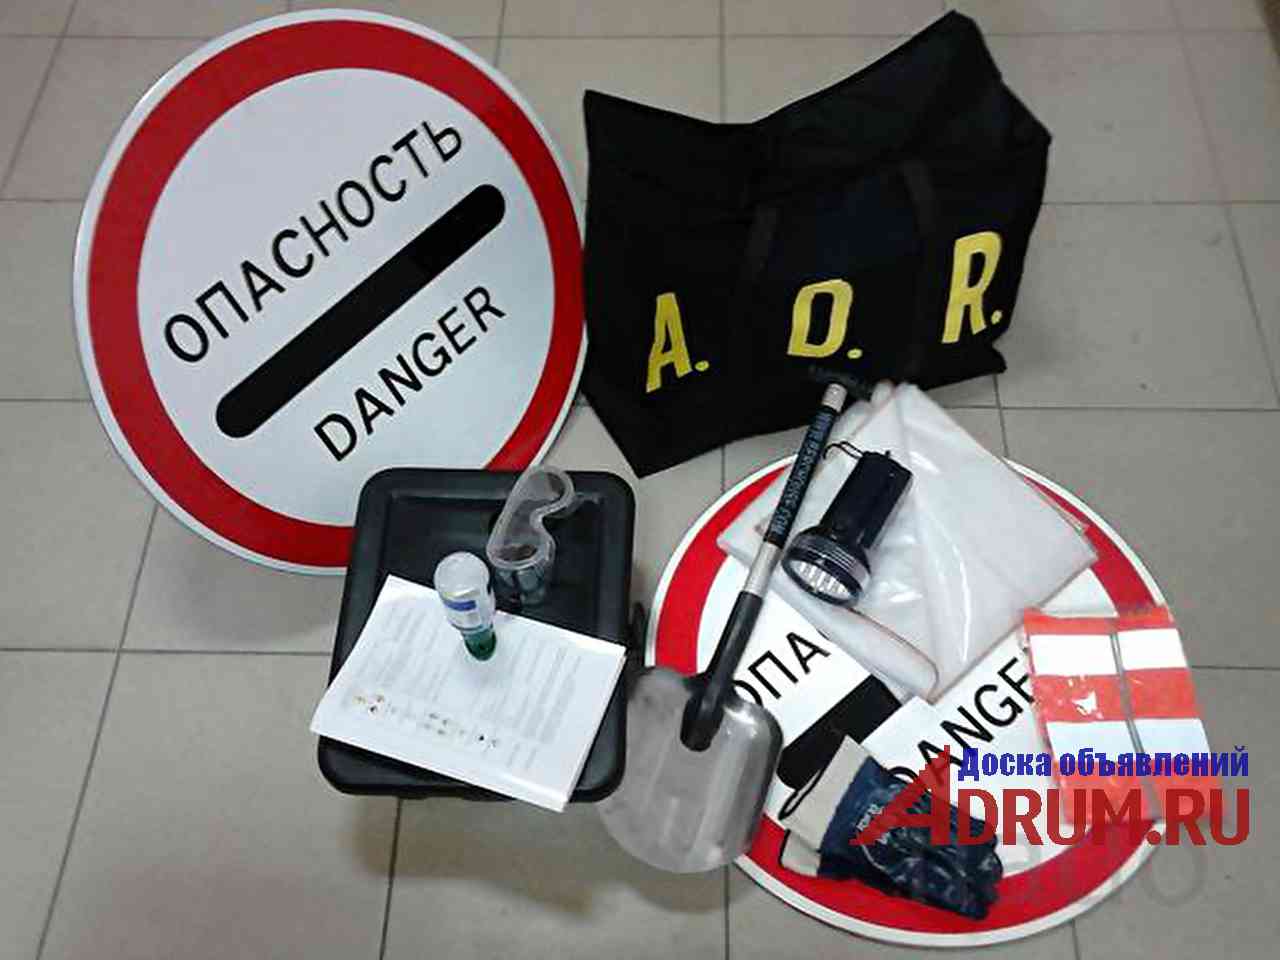 Adr3 control. Комплект ADR для 3,4.1,4.3,8,9 (сумка ADR). Комплект ADR для 3,4.1, 4.3, 9, классов. Комплект для перевозки опасных грузов ADR. 3, 4.1, 4.3, 8, 9 Классов (с сумкой). Комплекты адр.